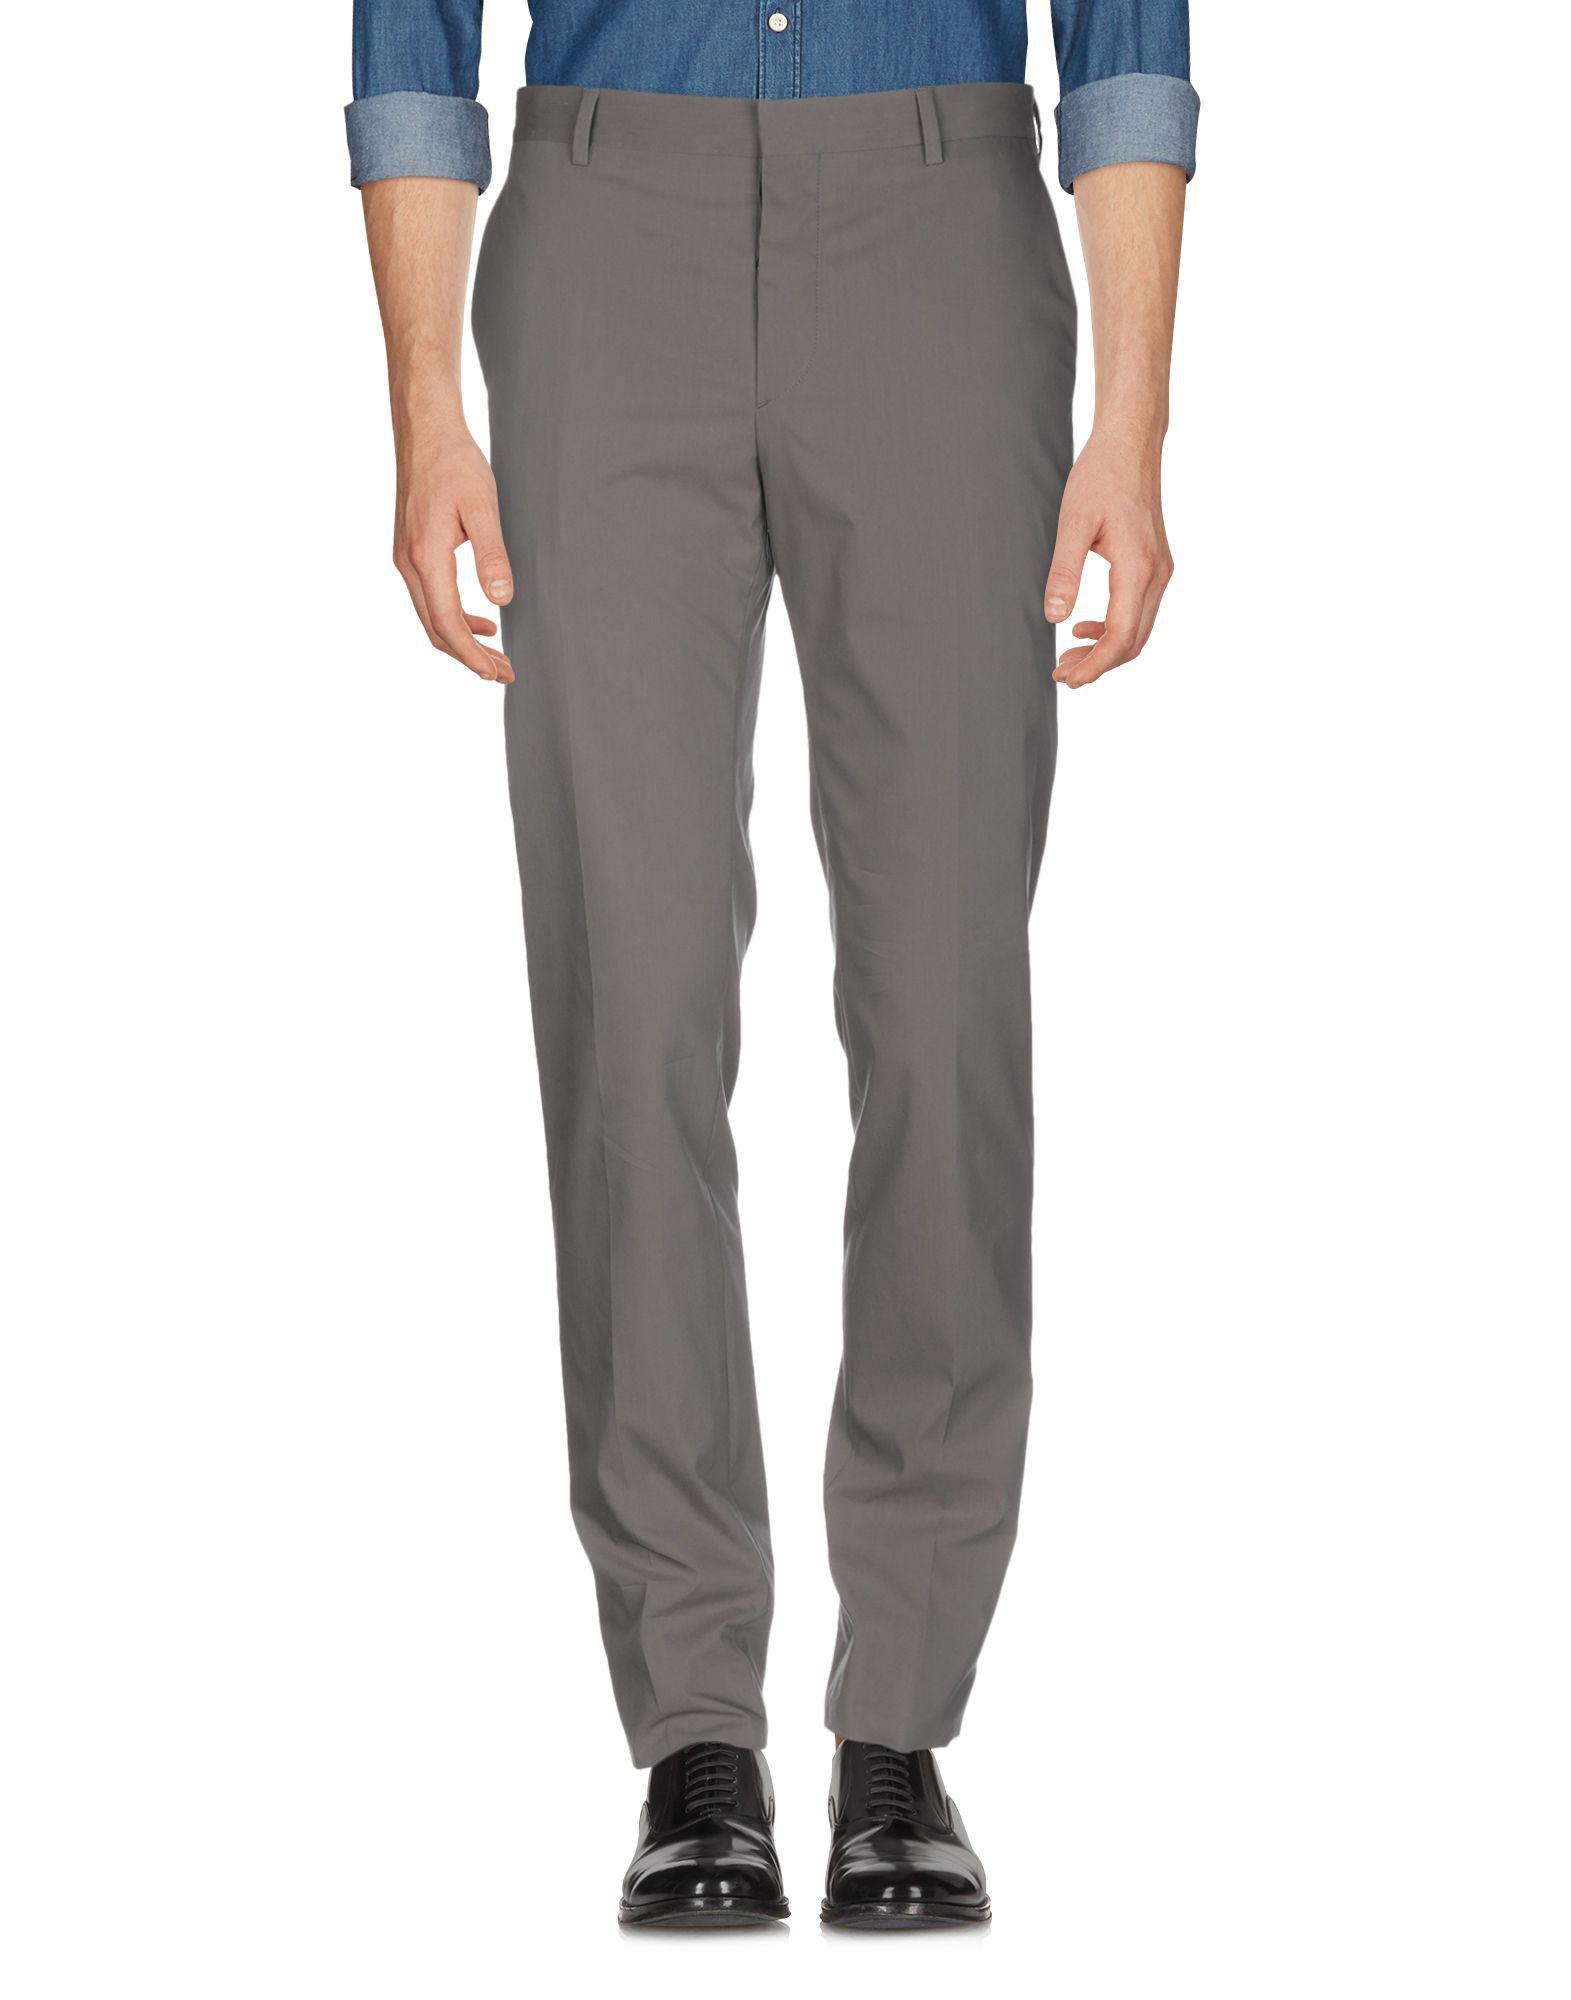 Prada Casual Pants in Grey (Gray) for Men - Lyst